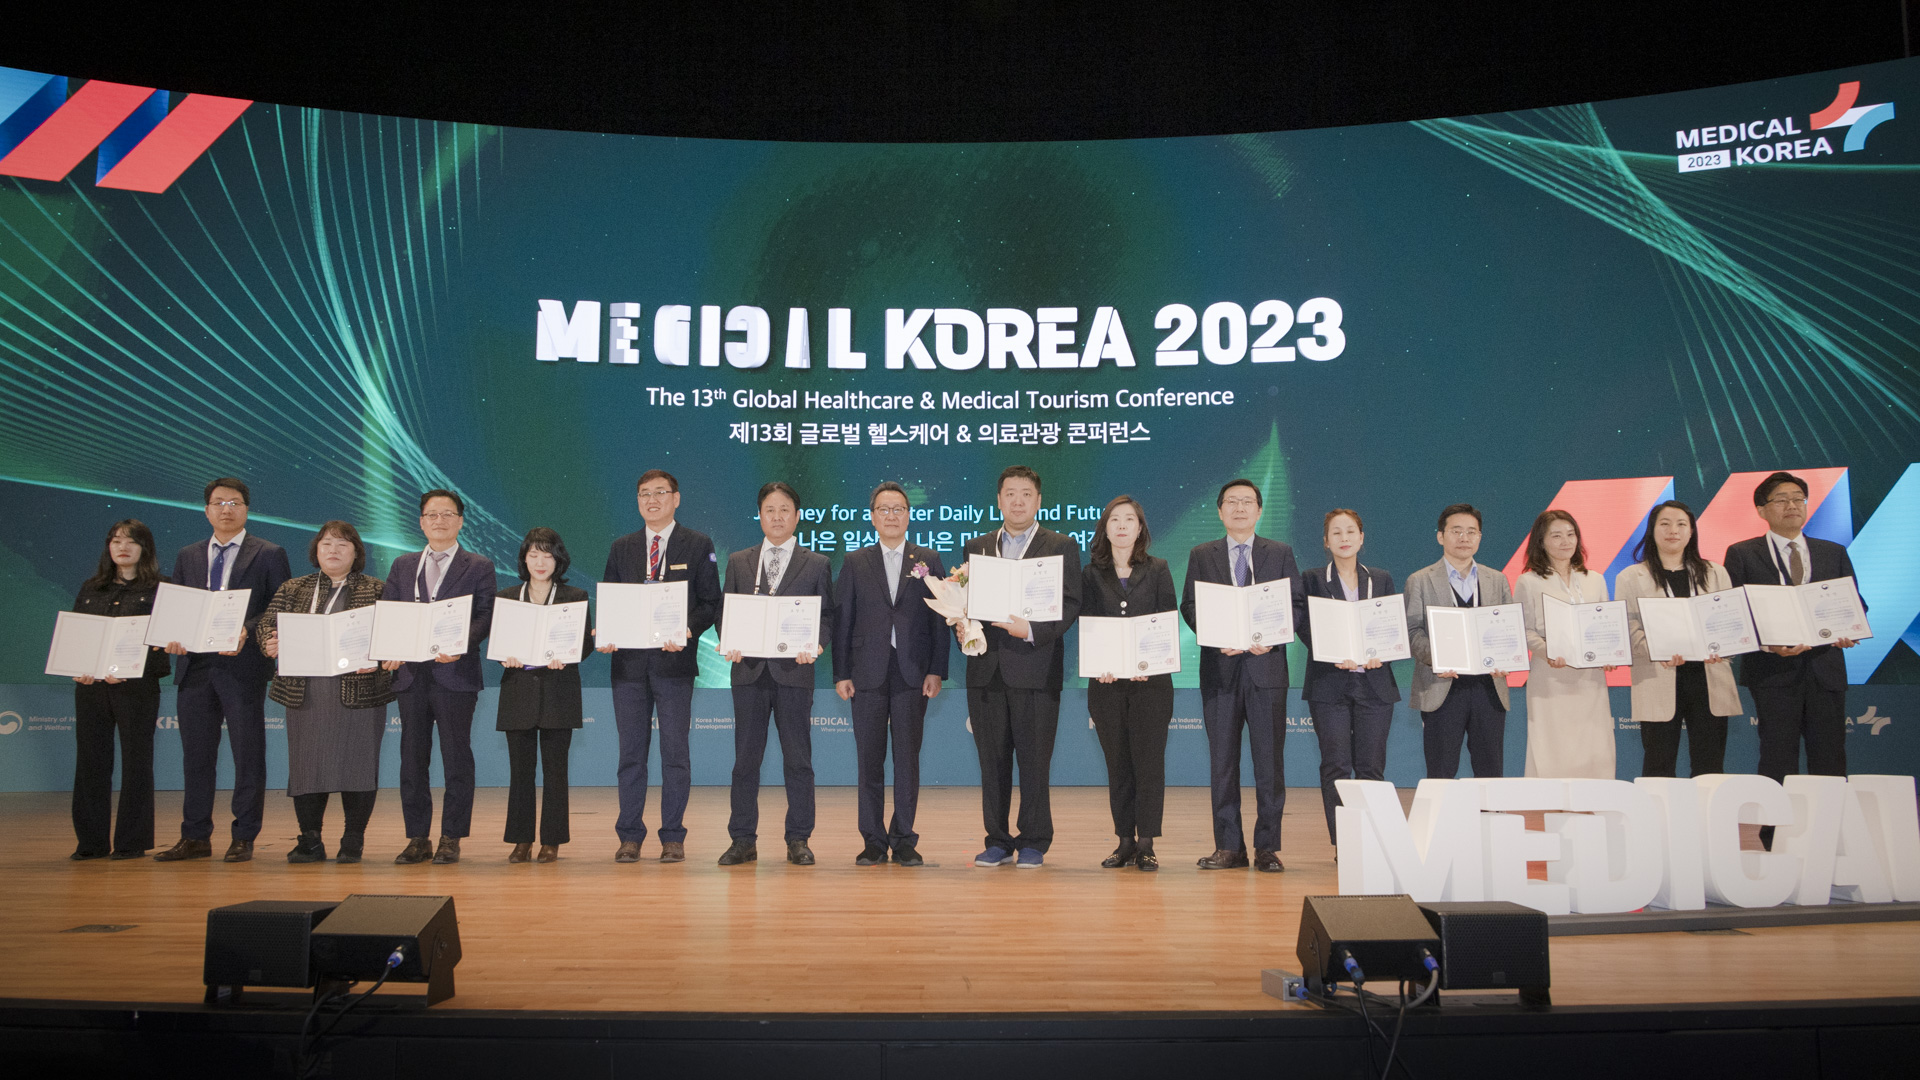 ‘더 나은 일상, 더 나은 미래를 위한 여정’ 「메디컬 코리아(Medical Korea) 2023」 사진26